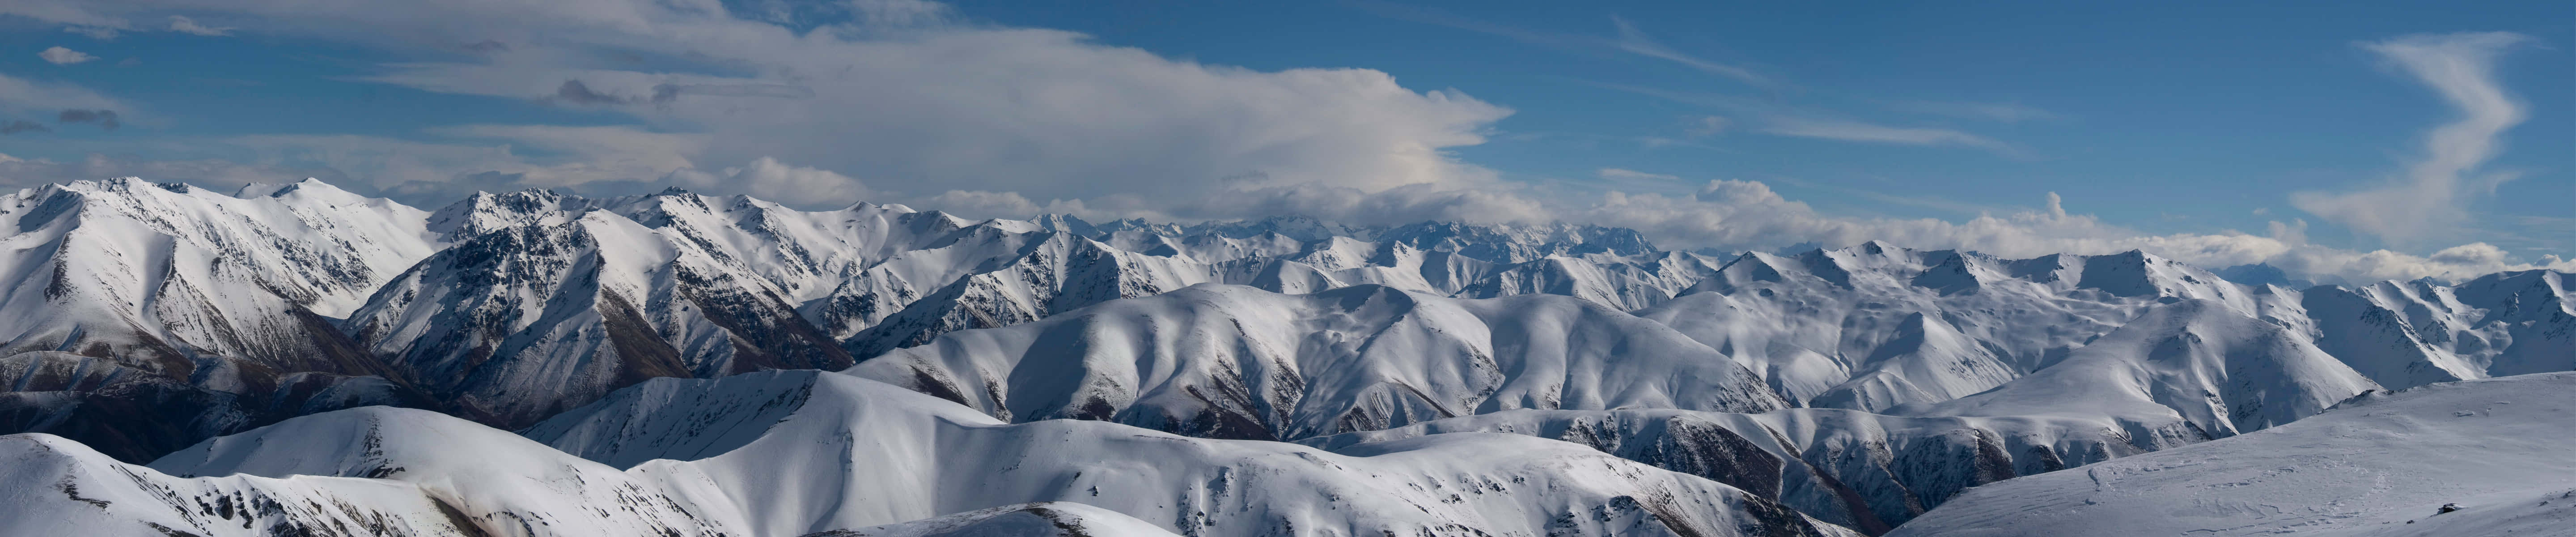 En bjergkæde med sneklædte bjerge og skyer Wallpaper